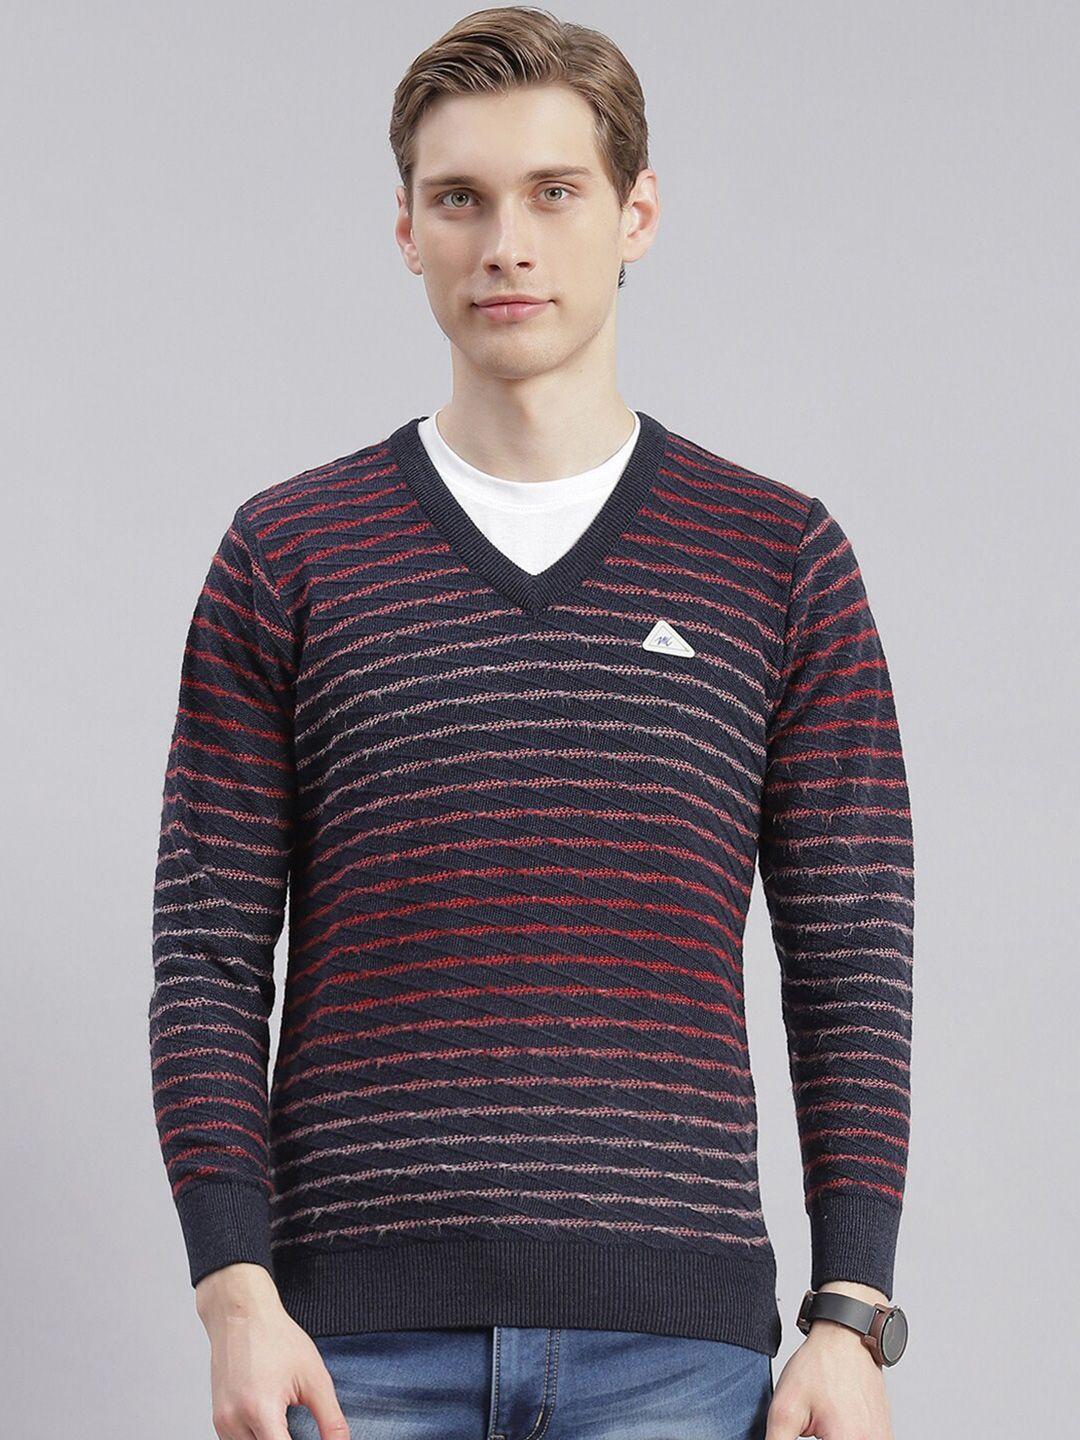 monte-carlo-striped-v-neck-pullover-sweater